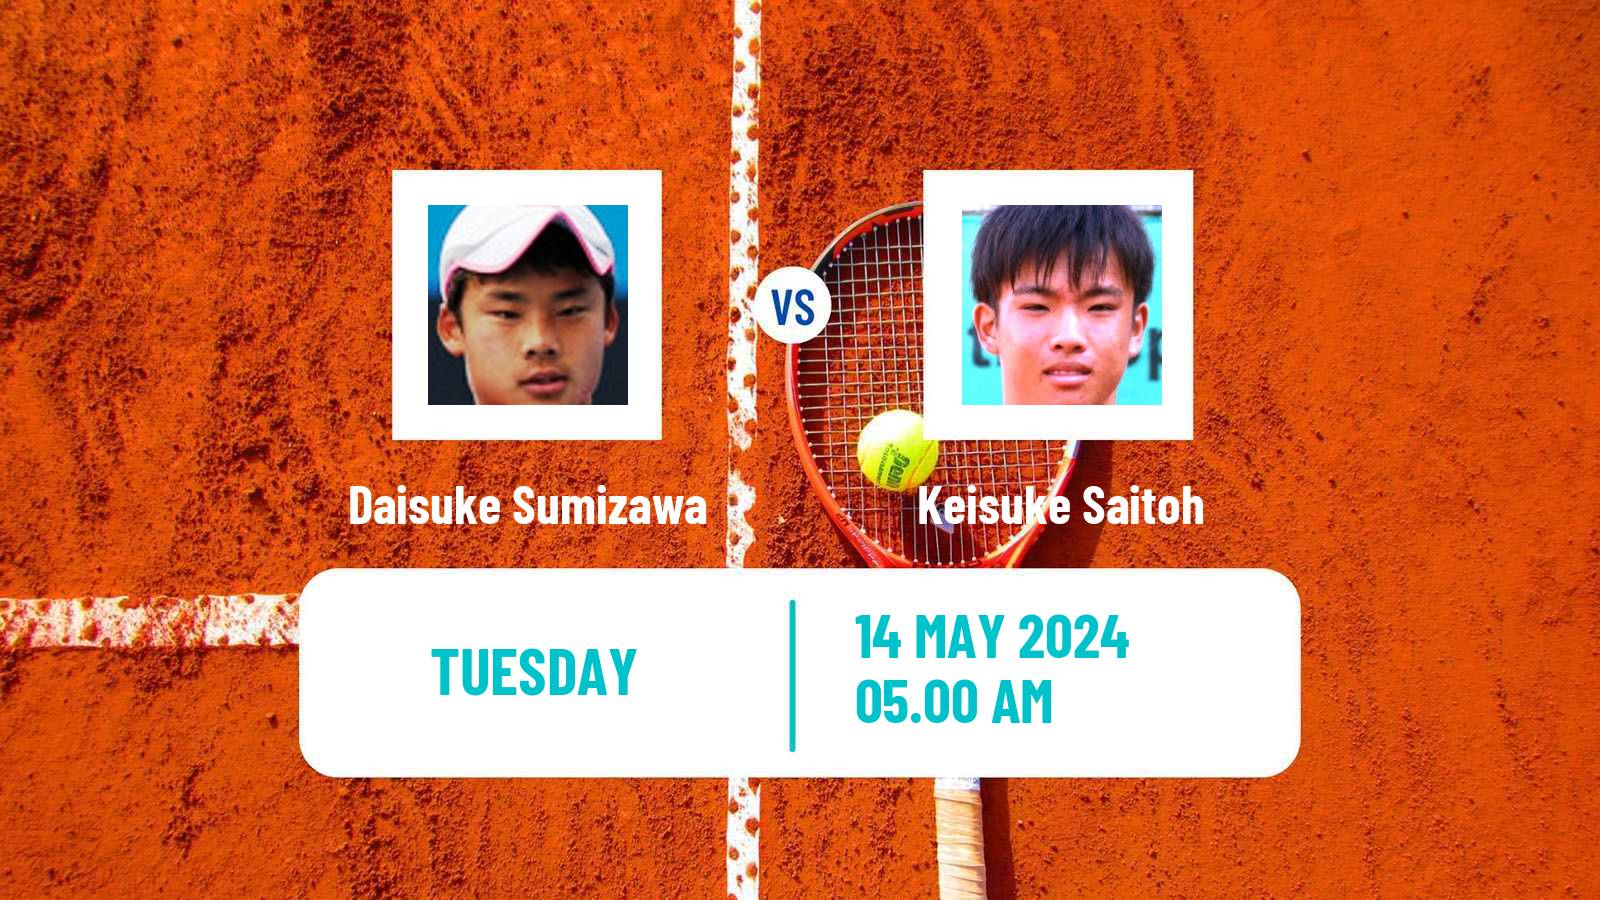 Tennis ITF M15 Kursumlijska Banja 4 Men 2024 Daisuke Sumizawa - Keisuke Saitoh